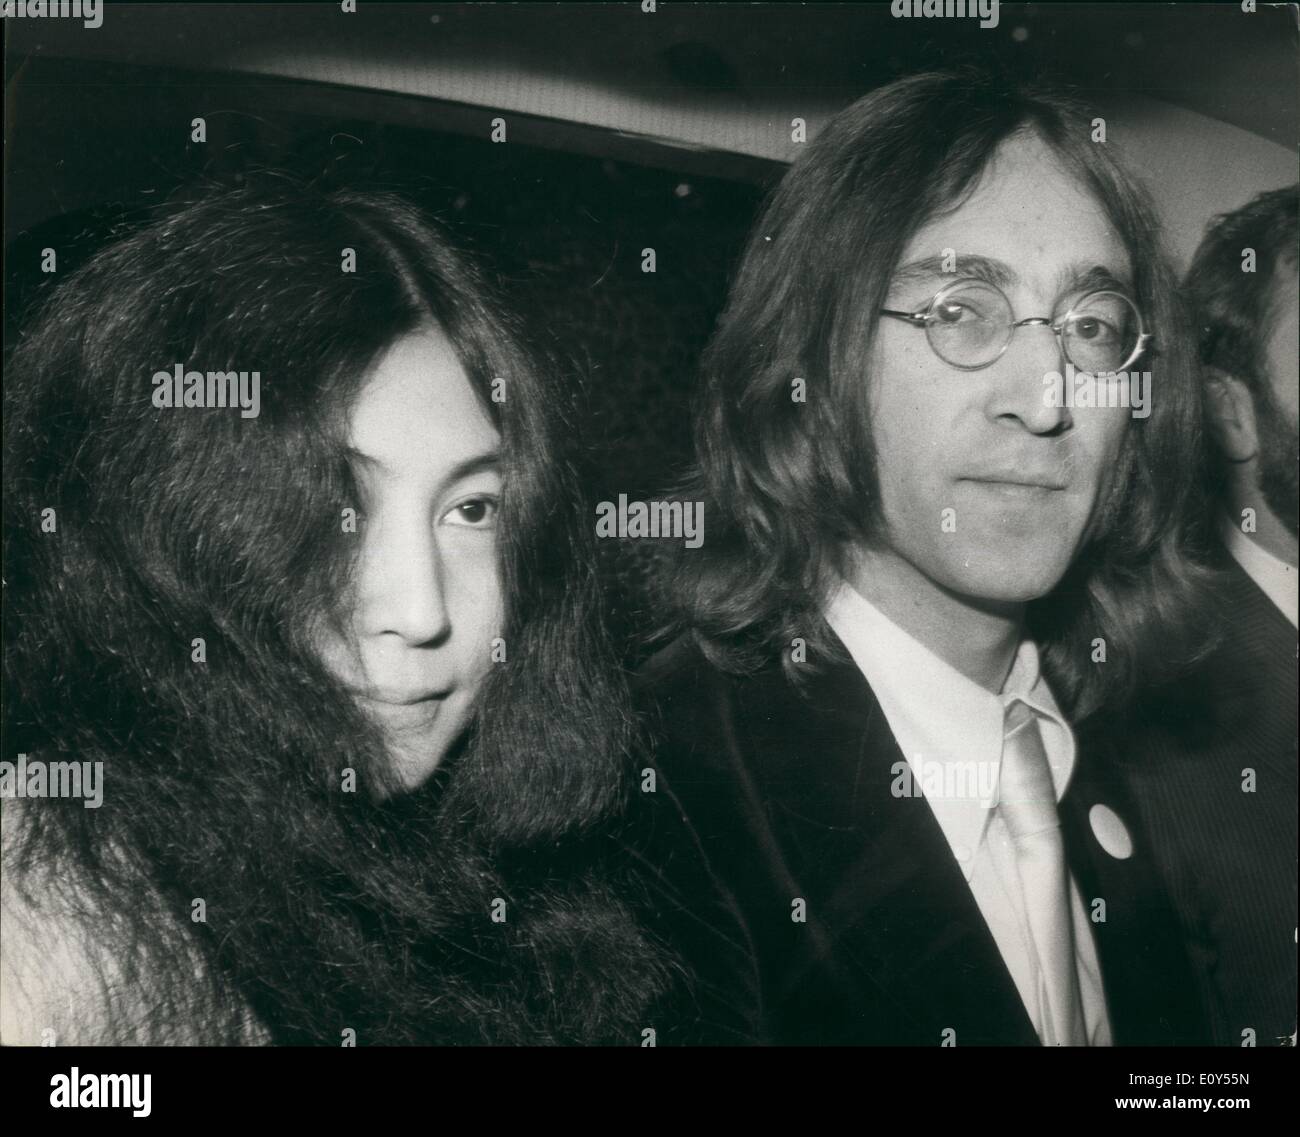 11 novembre 1968 - John Lennon en cour : John Lennon et son amie japonaise, Yoko Ono, a comparu de nouveau aujourd'hui à Marylebone cour. Le mois dernier, ils ont été placés sur ail jusqu'à aujourd'hui, accusé de possession de cannabis et d'entrave à la police dans l'exécution d'un mandat de perquisition. Sur la photo, John Lennon et Yoko Ono, représentés dans leur voiture aujourd'hui. Banque D'Images